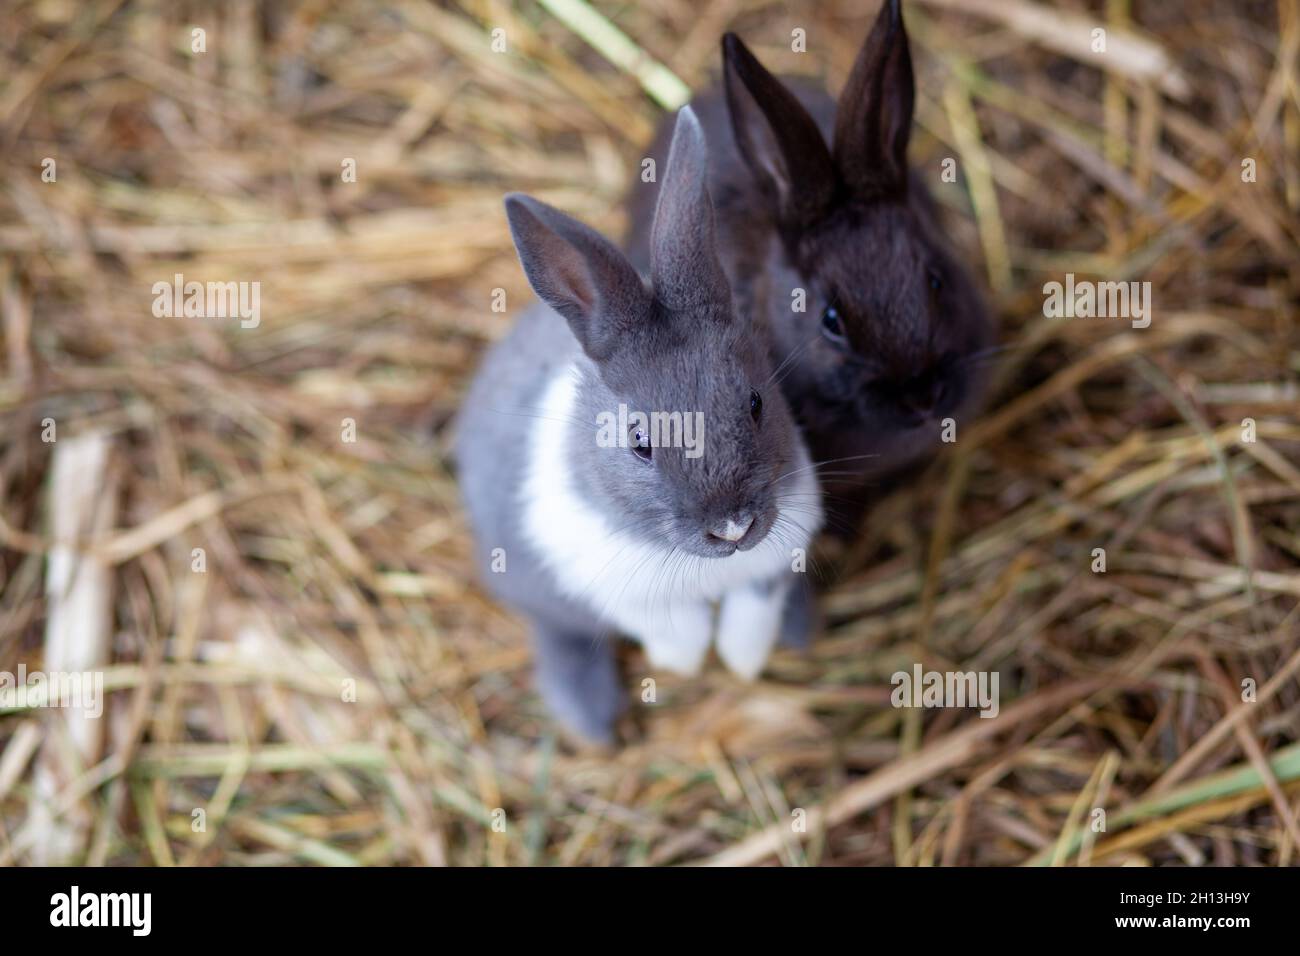 Mini Hay Bales & Baby Bales For Rabbits